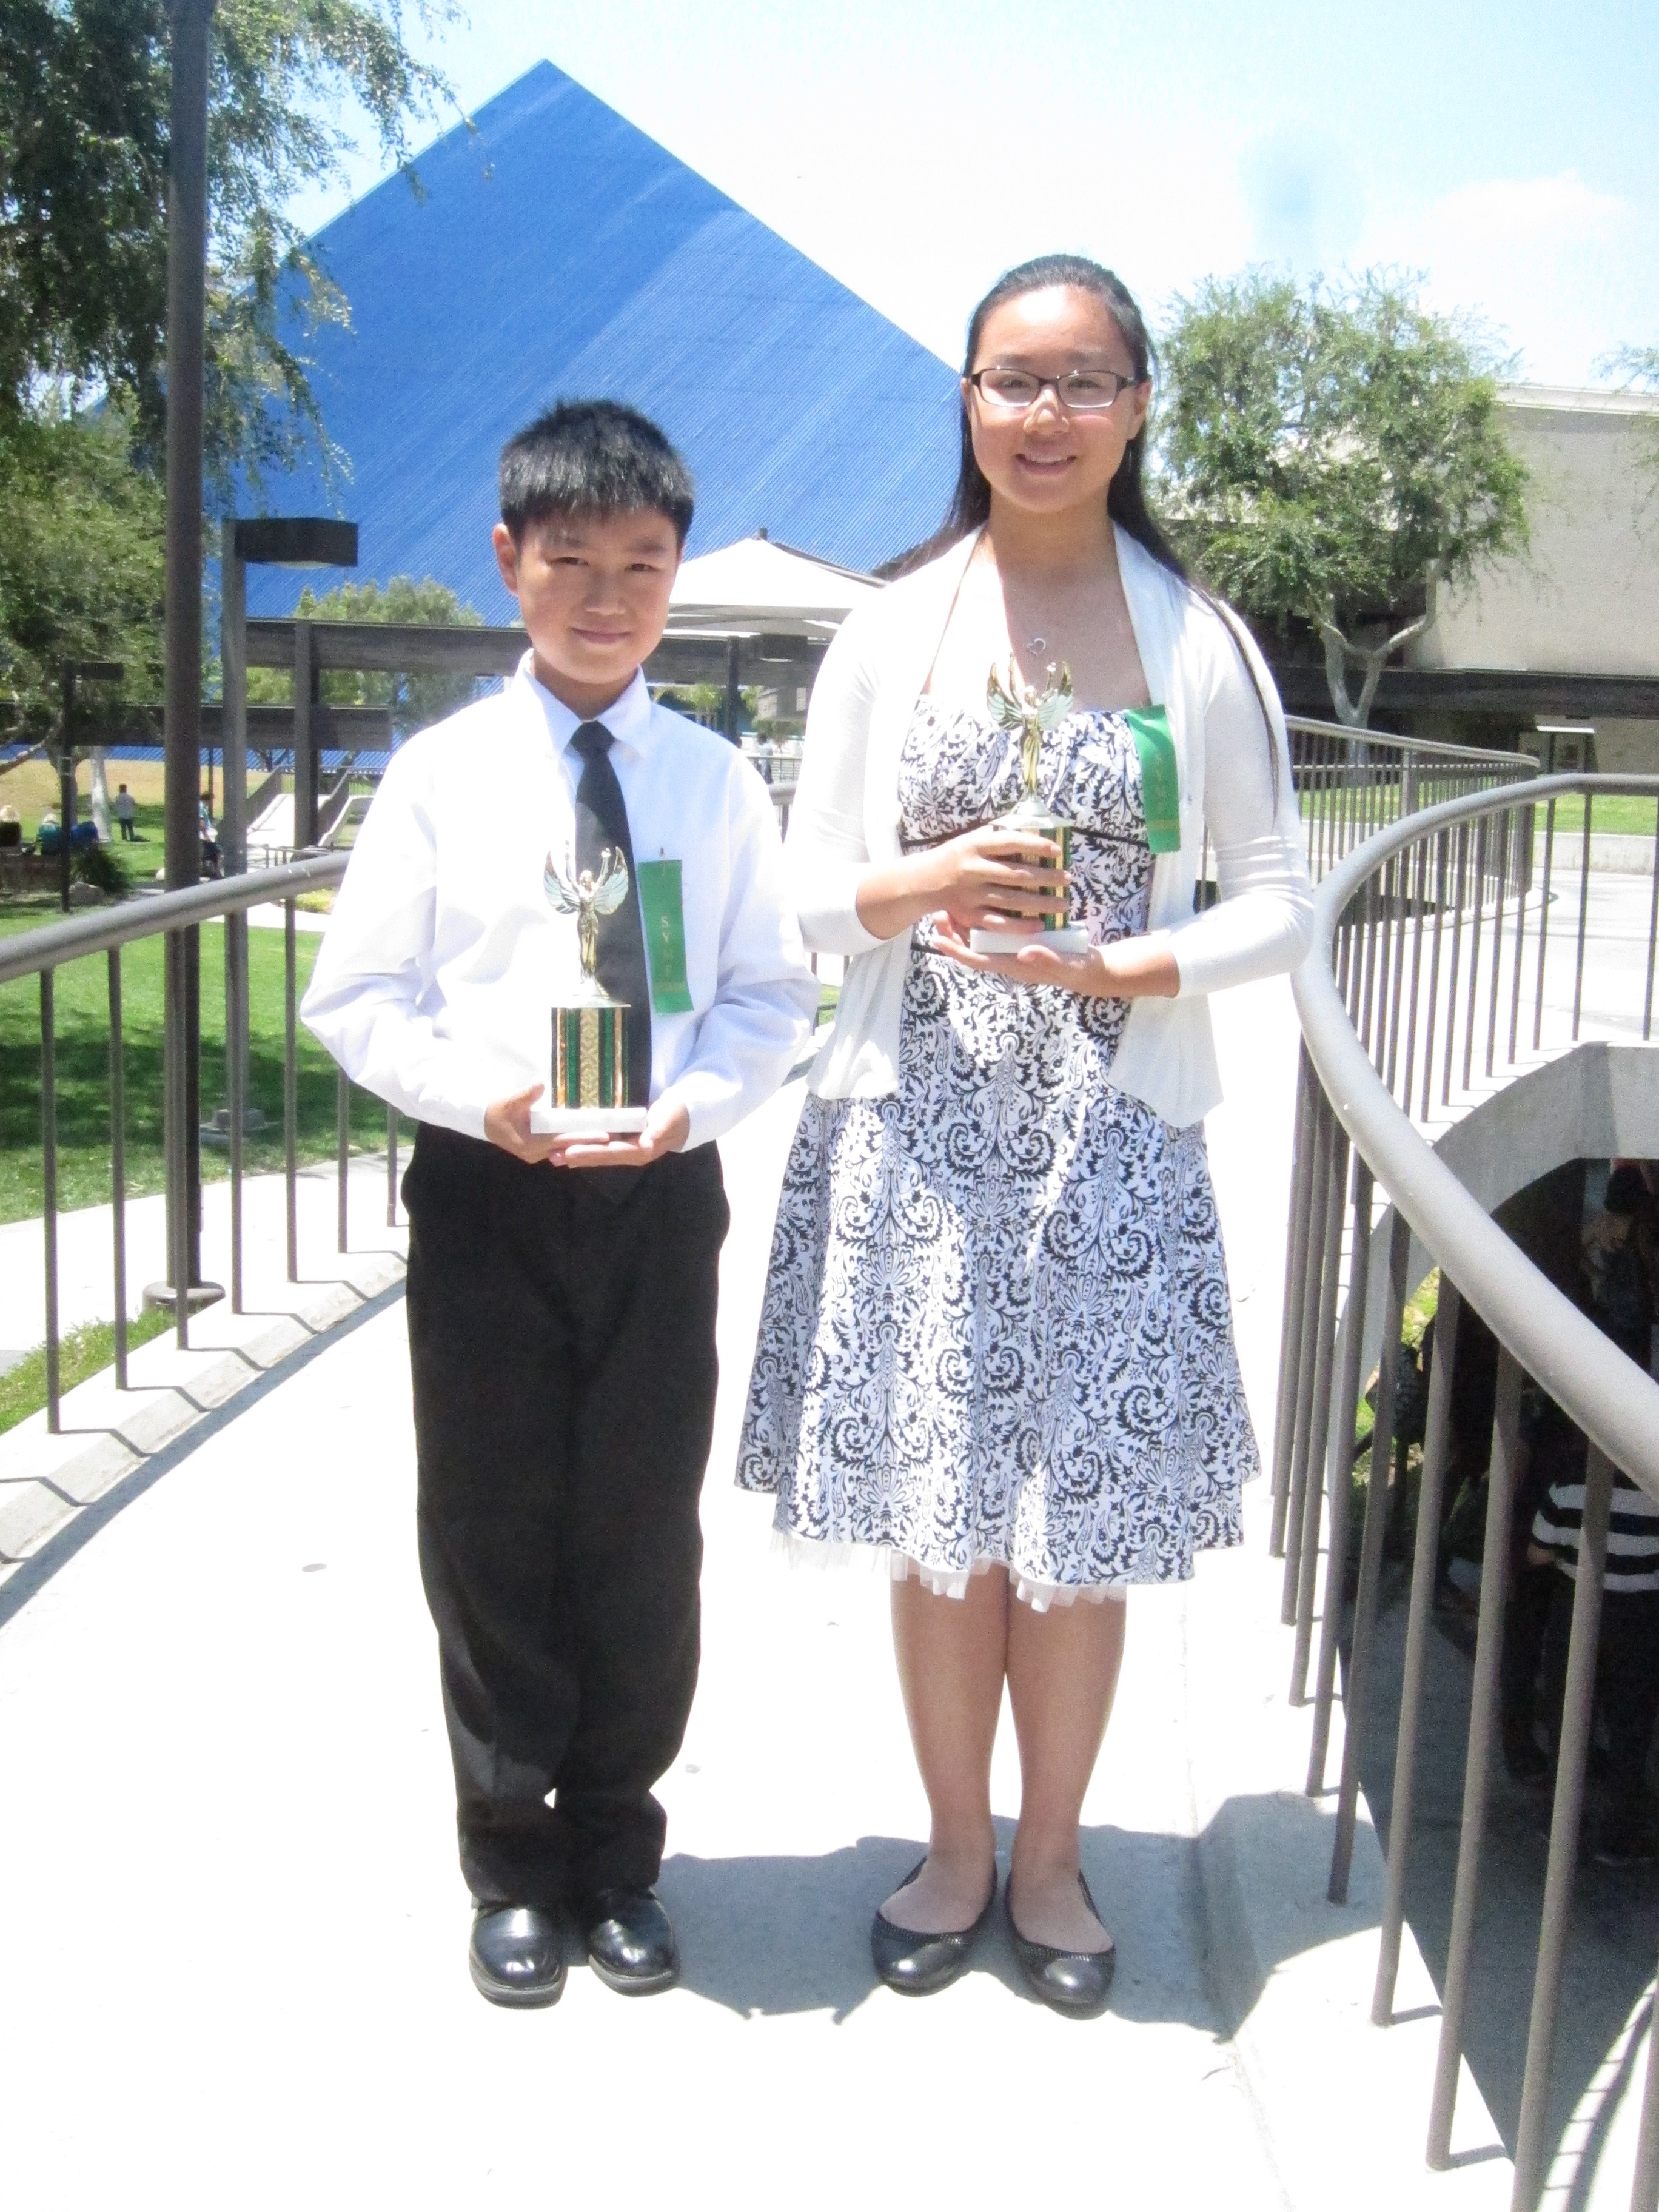 SYMF 2014: Matthew & Stephanie C. Piano Duet Winners - 88 Keys Academy Arcadia